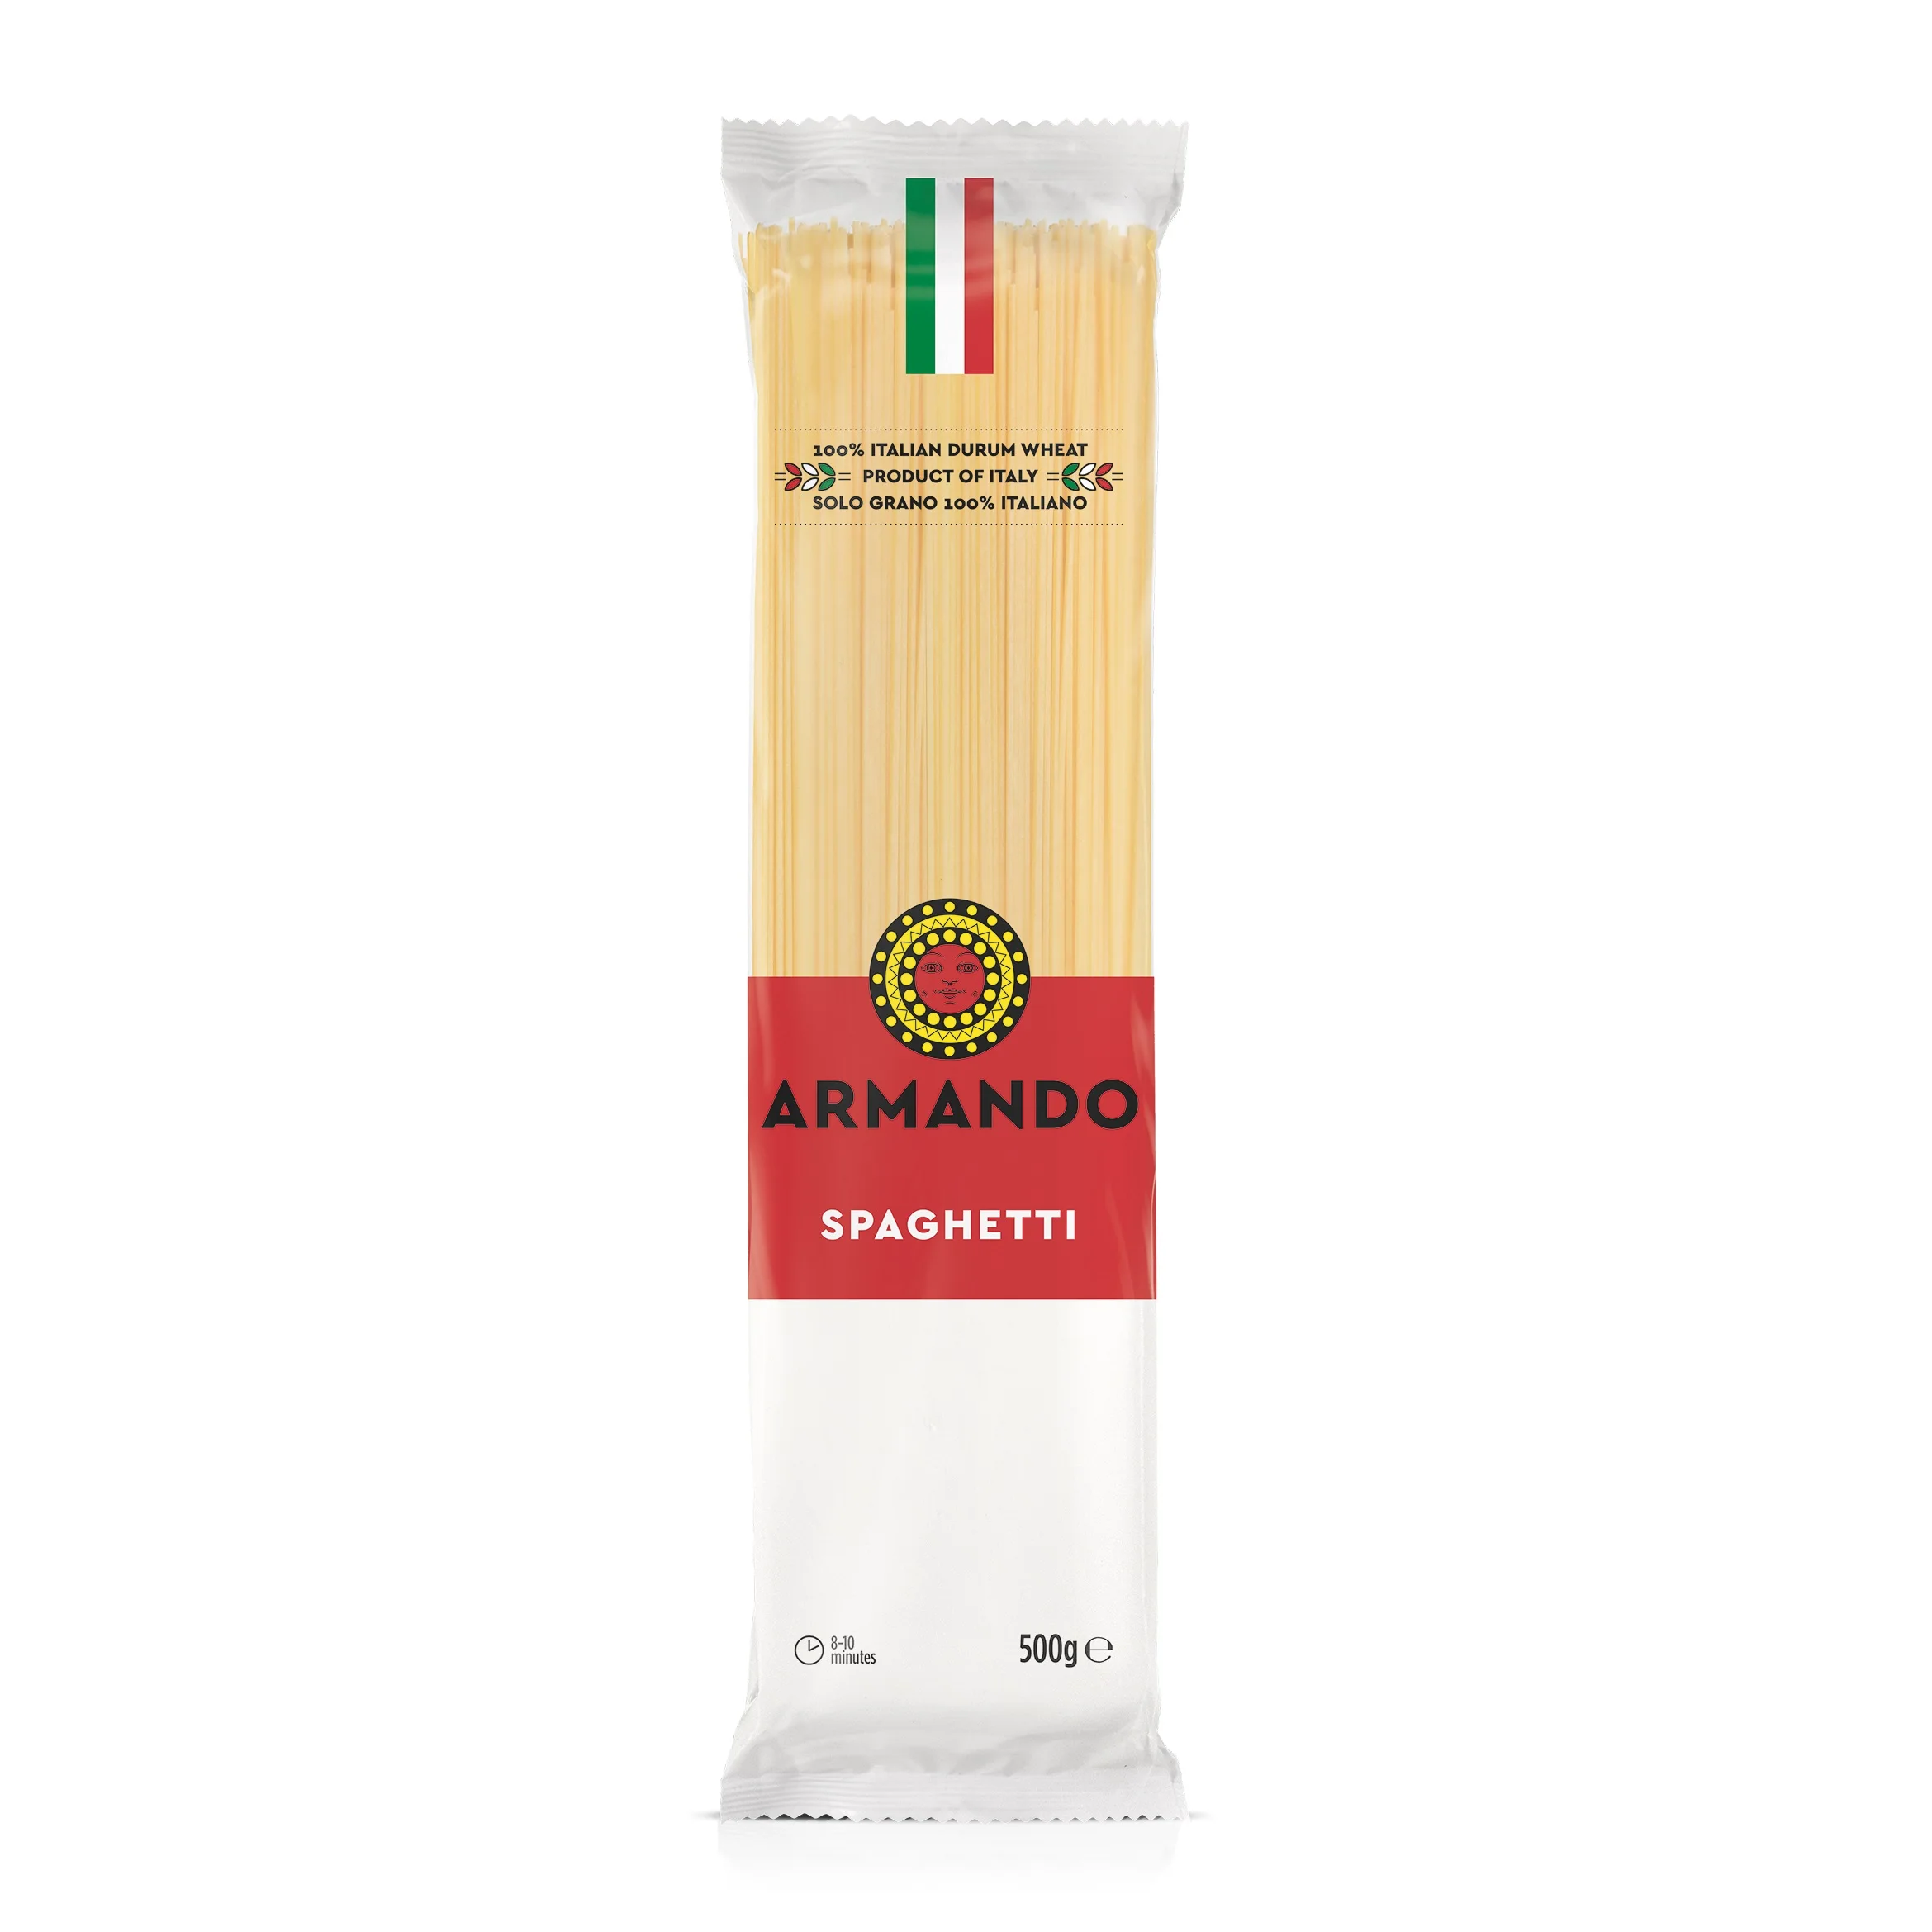 Jenis gandum yang digunakan untuk membuat produk-produk pasta seperti makaroni spageti dan produk pa